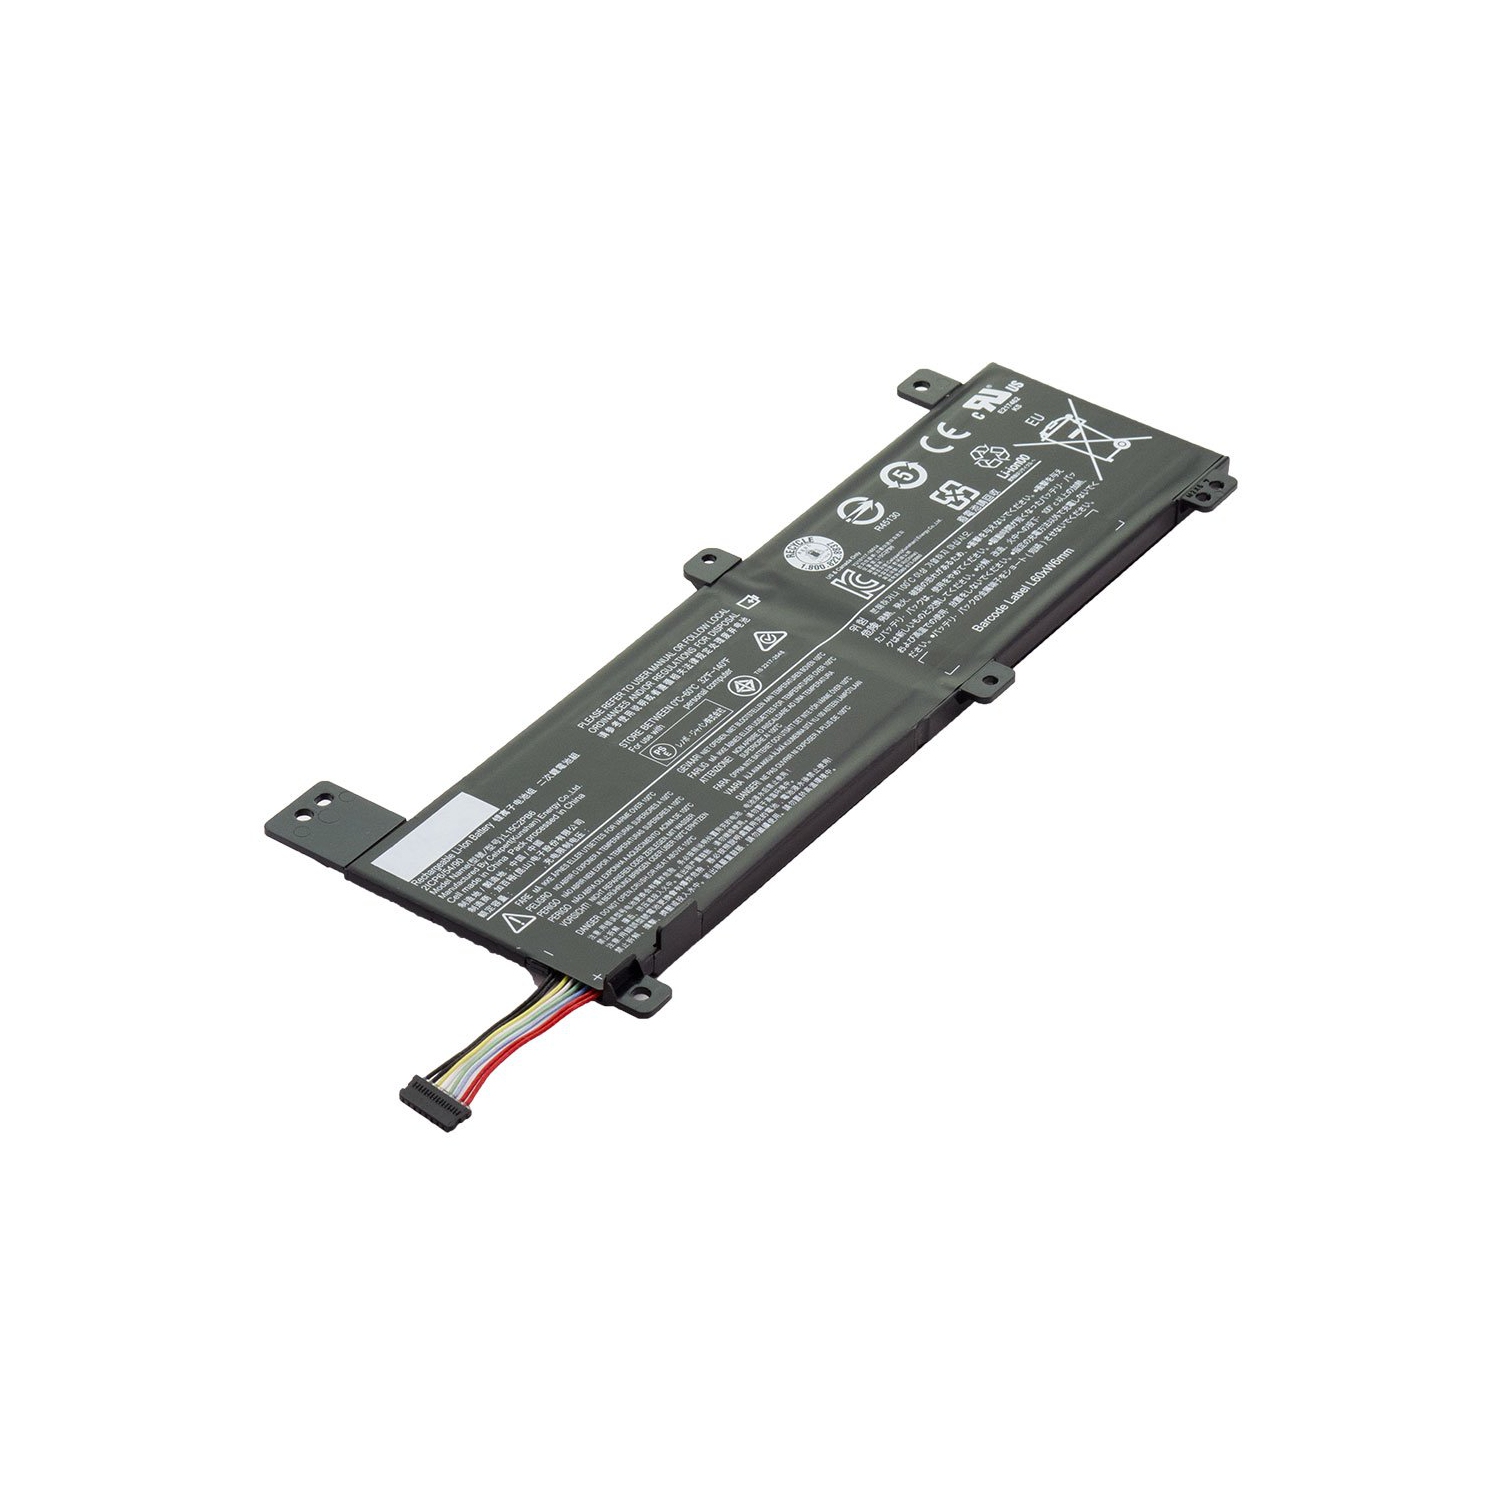 Laptop Battery Replacement for Lenovo IdeaPad 310 14ISK 80SL, IdeaPad 310 14ISK, L15C2PB6, L15L2PB2, L15M2PB4